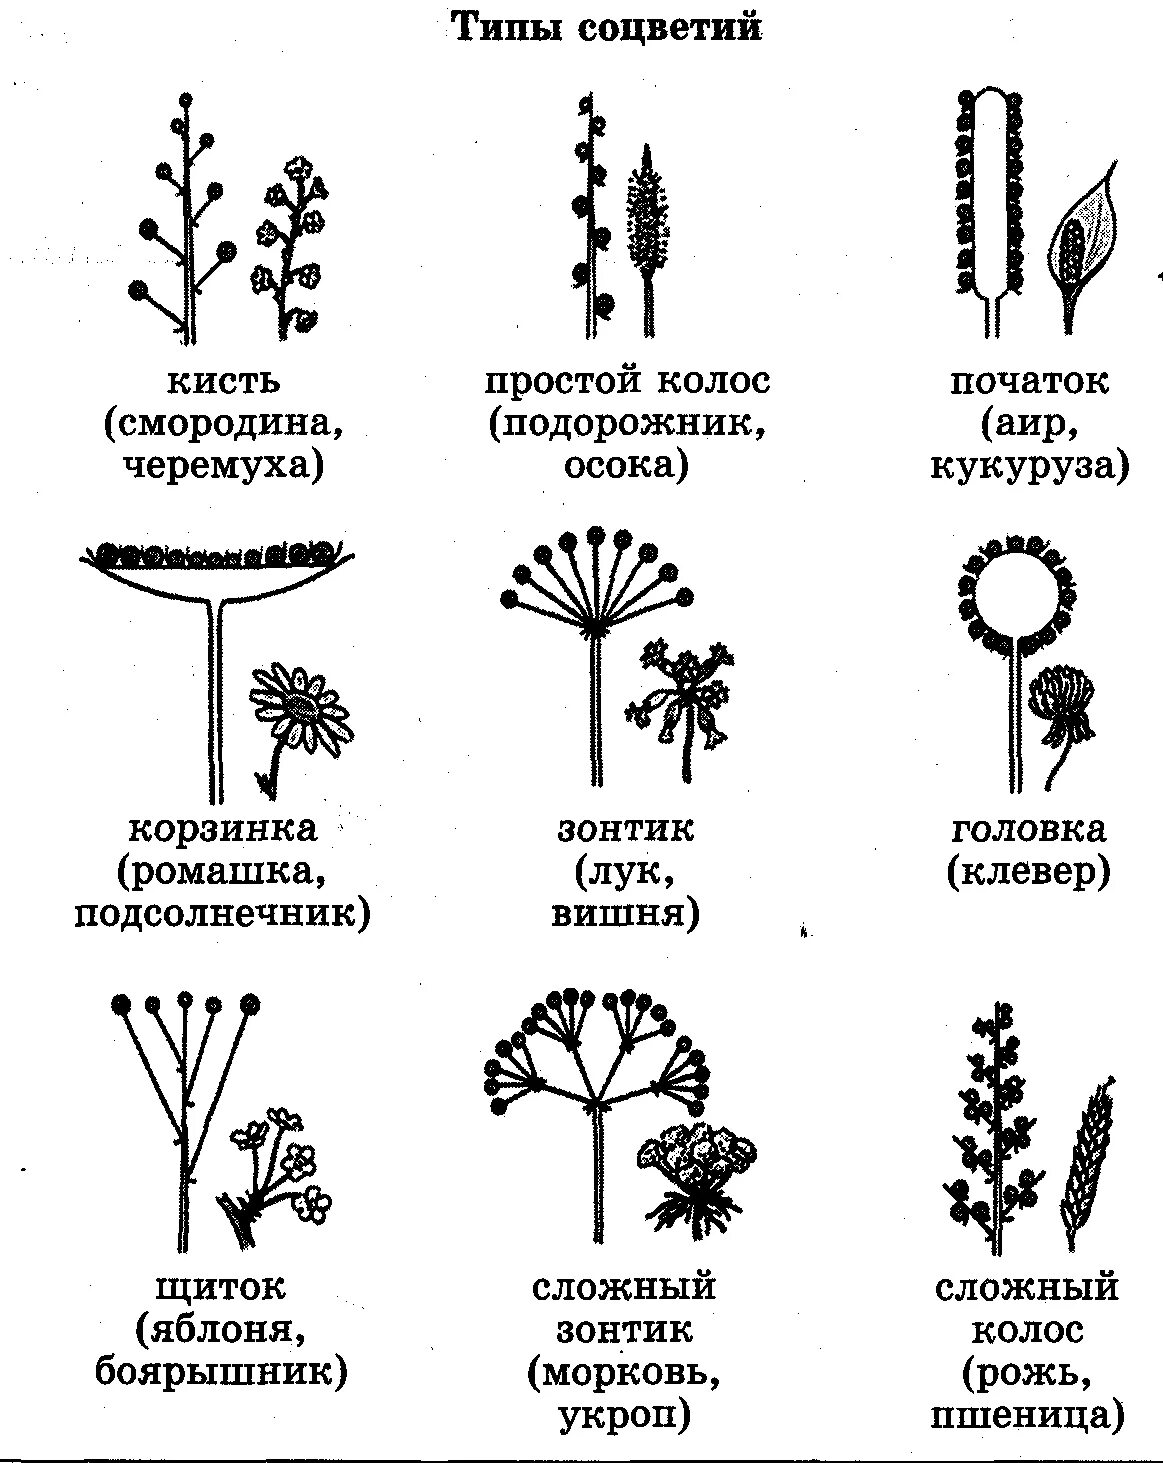 Схема классификации соцветий цветковых растений. Схемы типов соцветий покрытосеменных растений. Соцветие кистевидная корзинка. Схема сложного соцветия. Виды соцветий и плодов